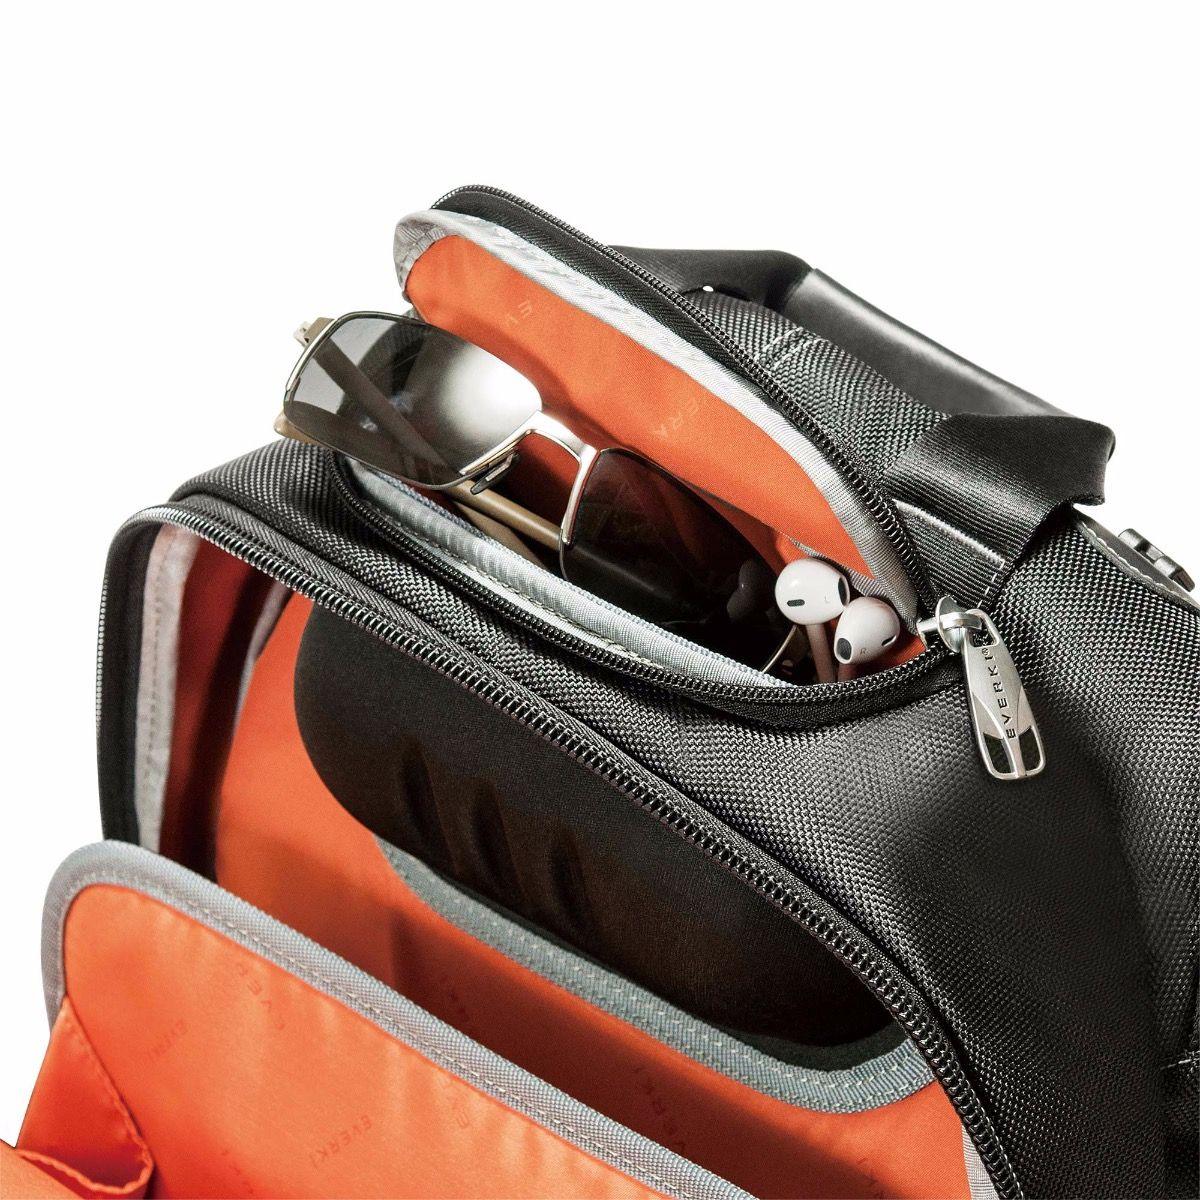 Everki Concept 2 17.3" Laptop Backpack - Marknet Technology